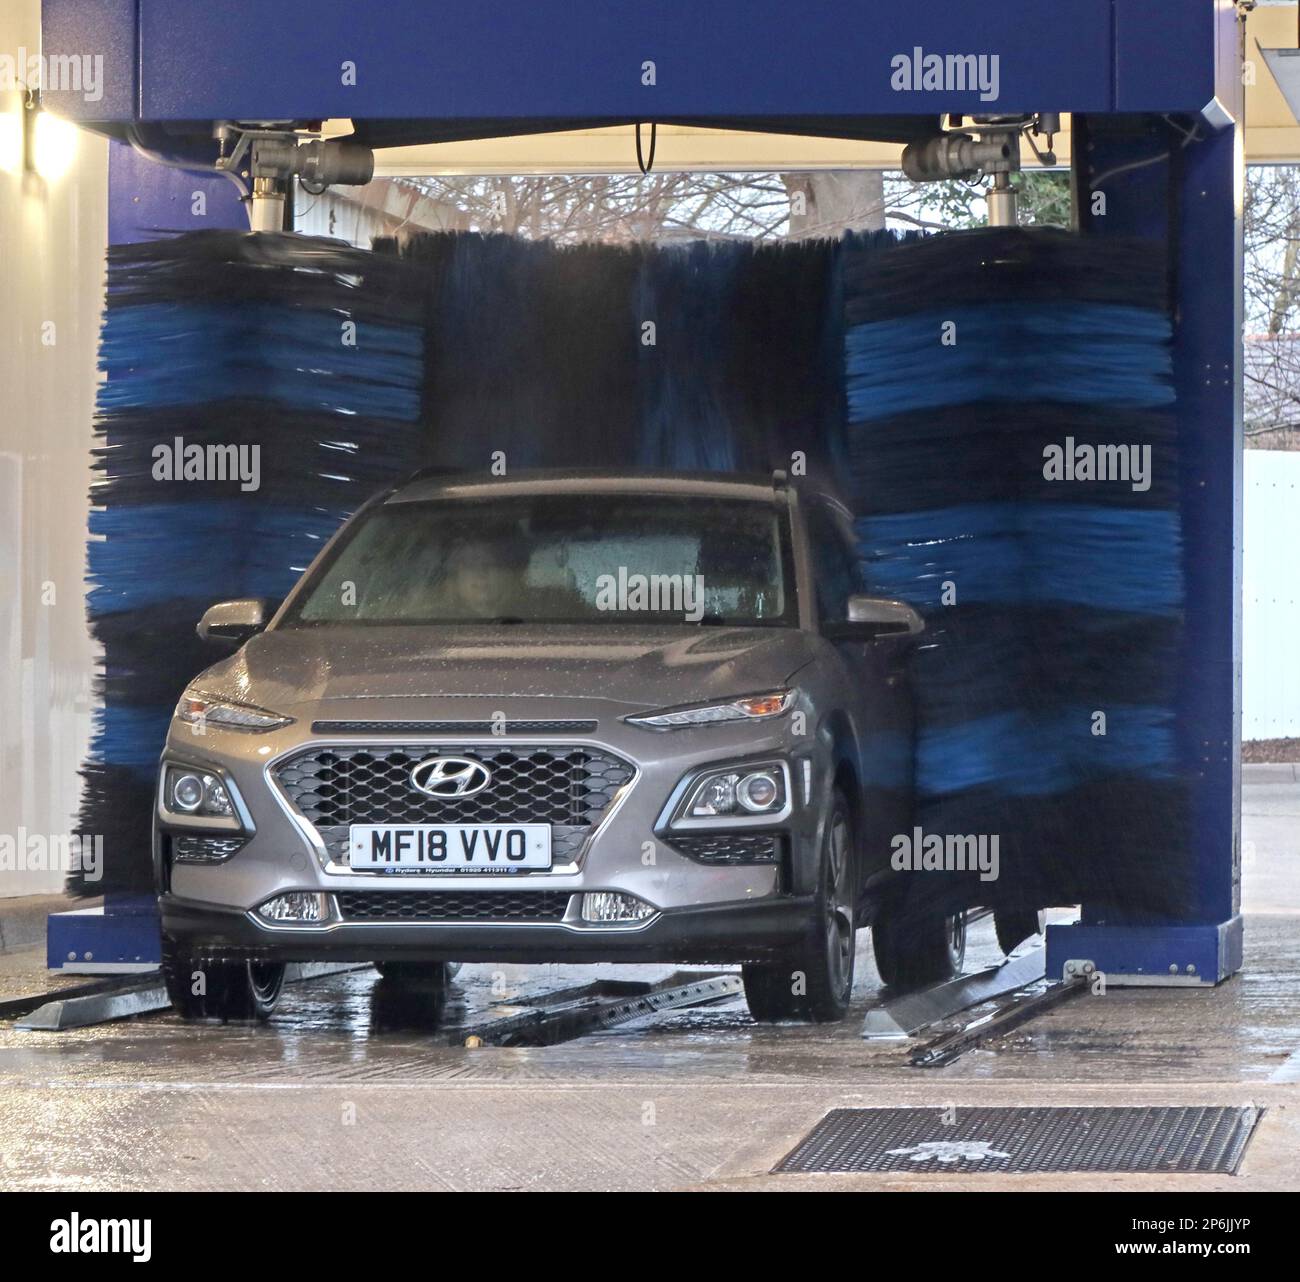 Silber Hyundai Saloon wird in einer automatischen Autowaschanlage gewaschen, an einer Tankstelle, Esso Rontec, 661-663 Knutsford Rd, Latchford East, Warrington WA4 1J Stockfoto